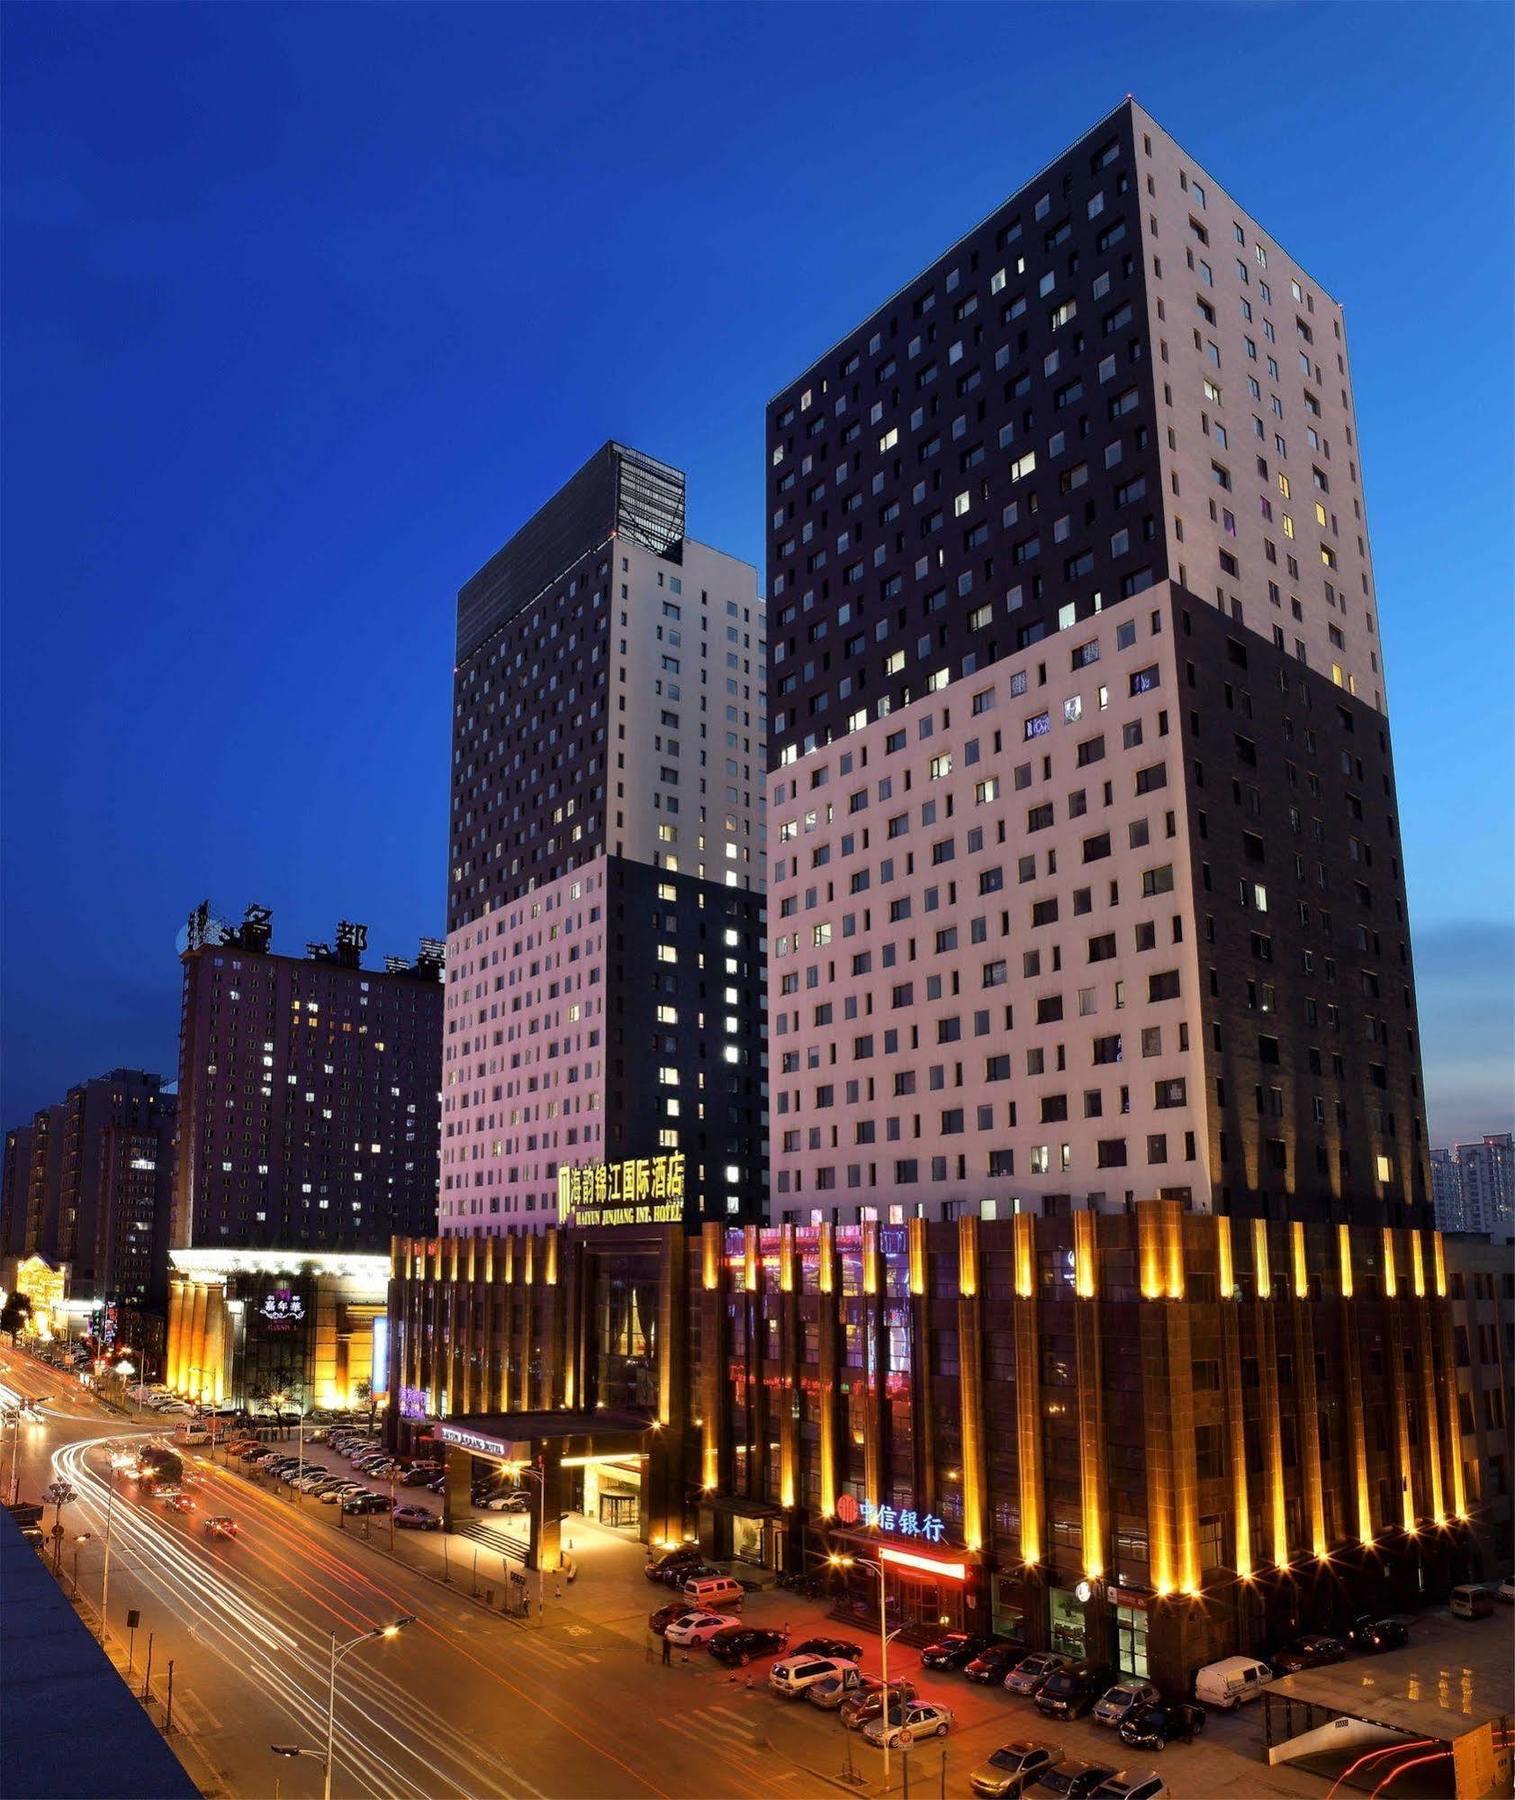 シェンヤン ハイユン ジンジアン インターナショナル ホテル 瀋陽 エクステリア 写真